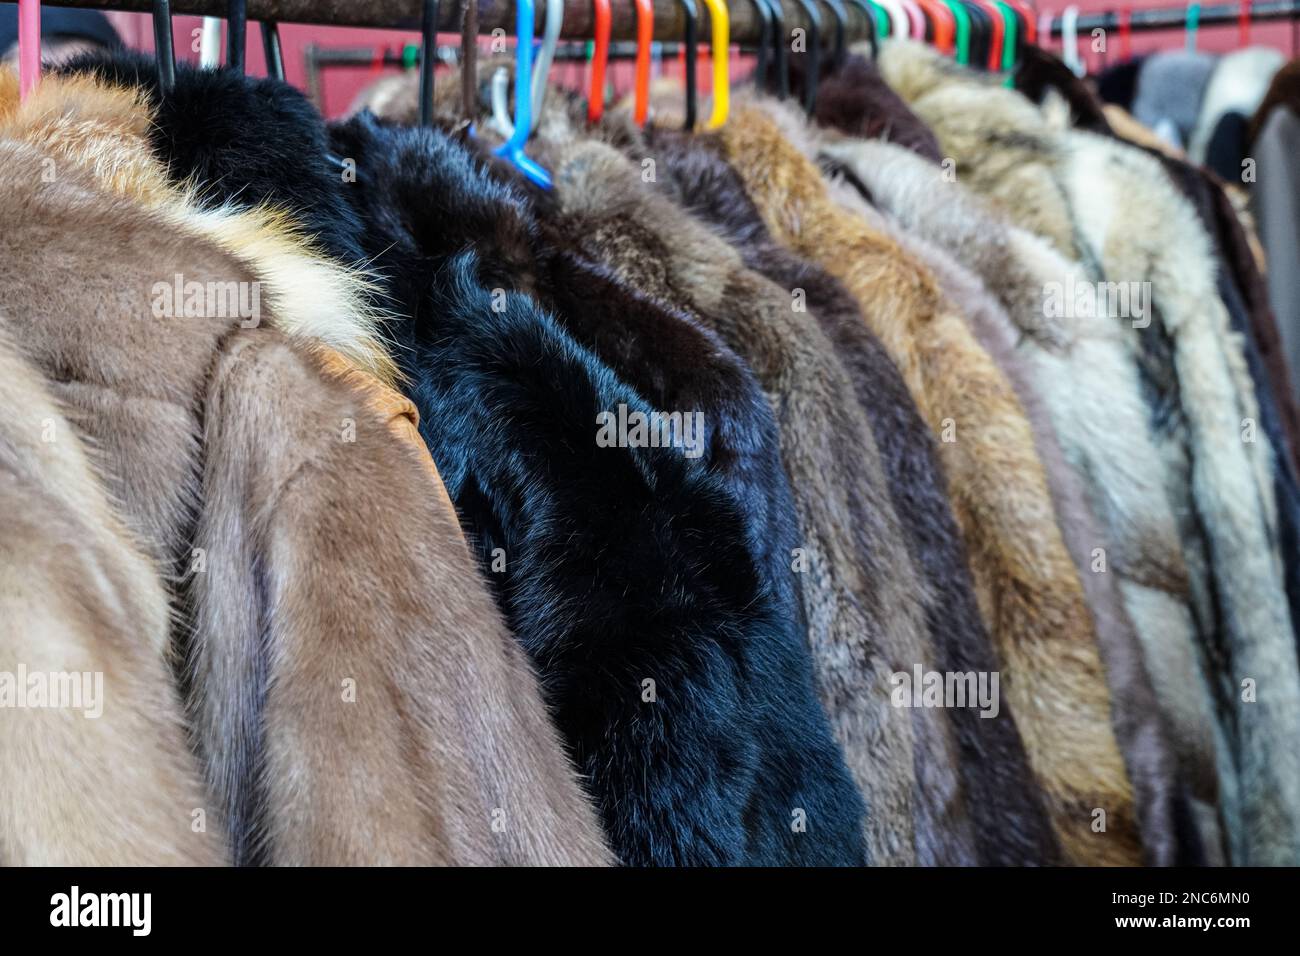 Manteaux de seconde main en fourrure animale, manteaux de fourrure réelle à vendre à Portobello Road Market, Londres Angleterre Royaume-Uni Banque D'Images